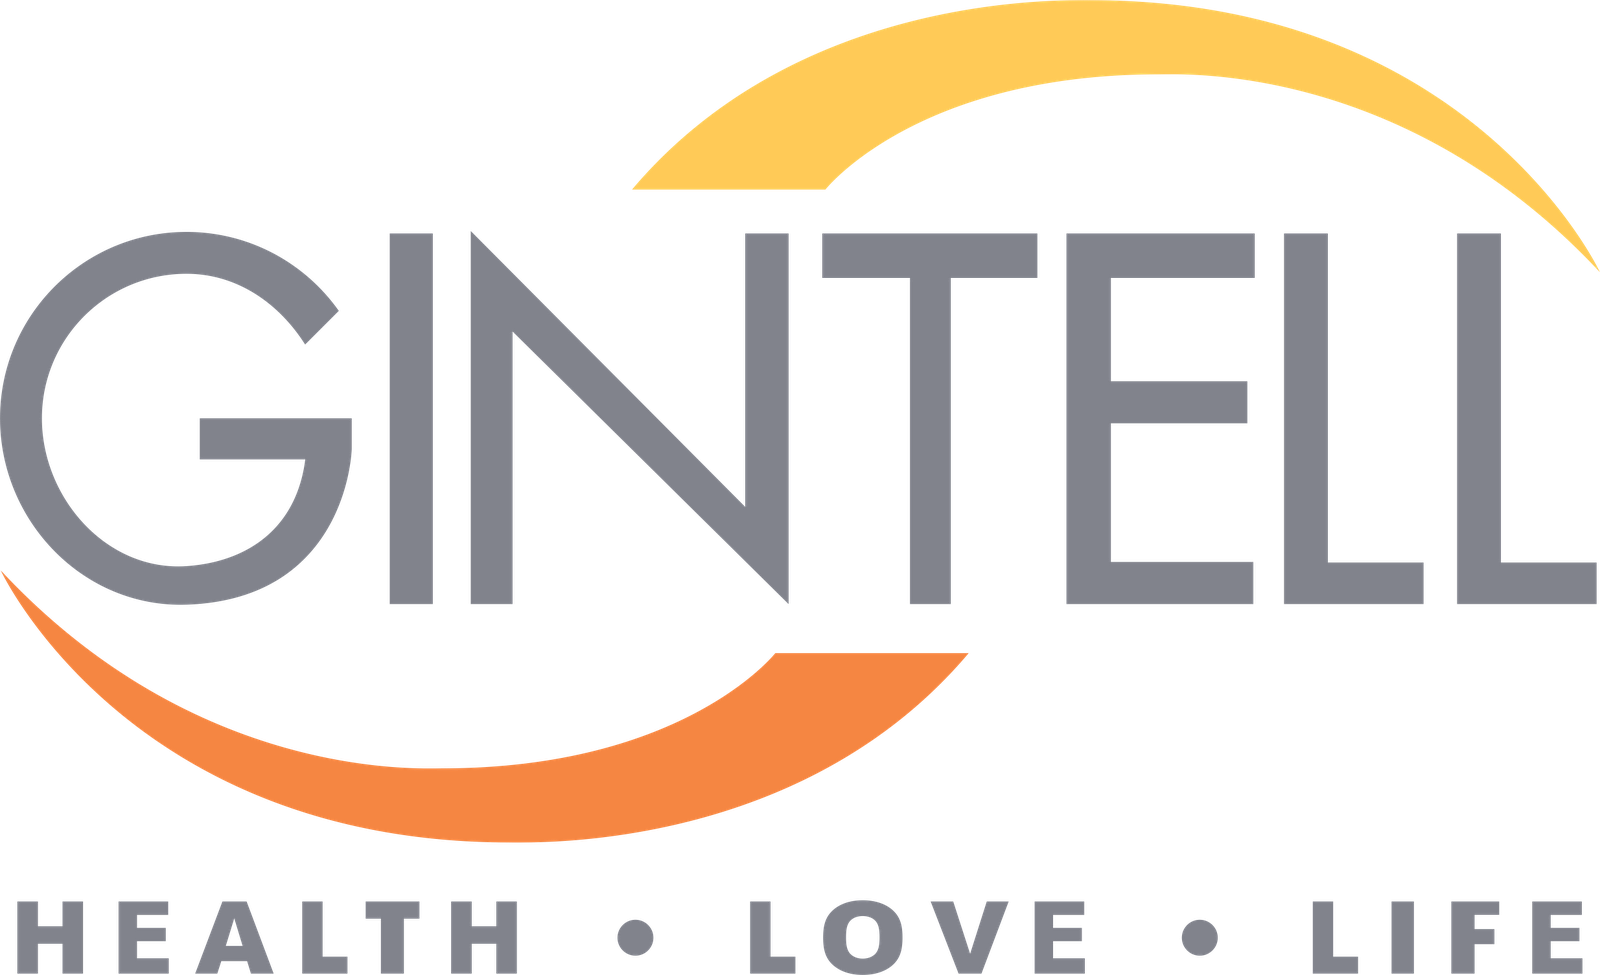 Gintell logo